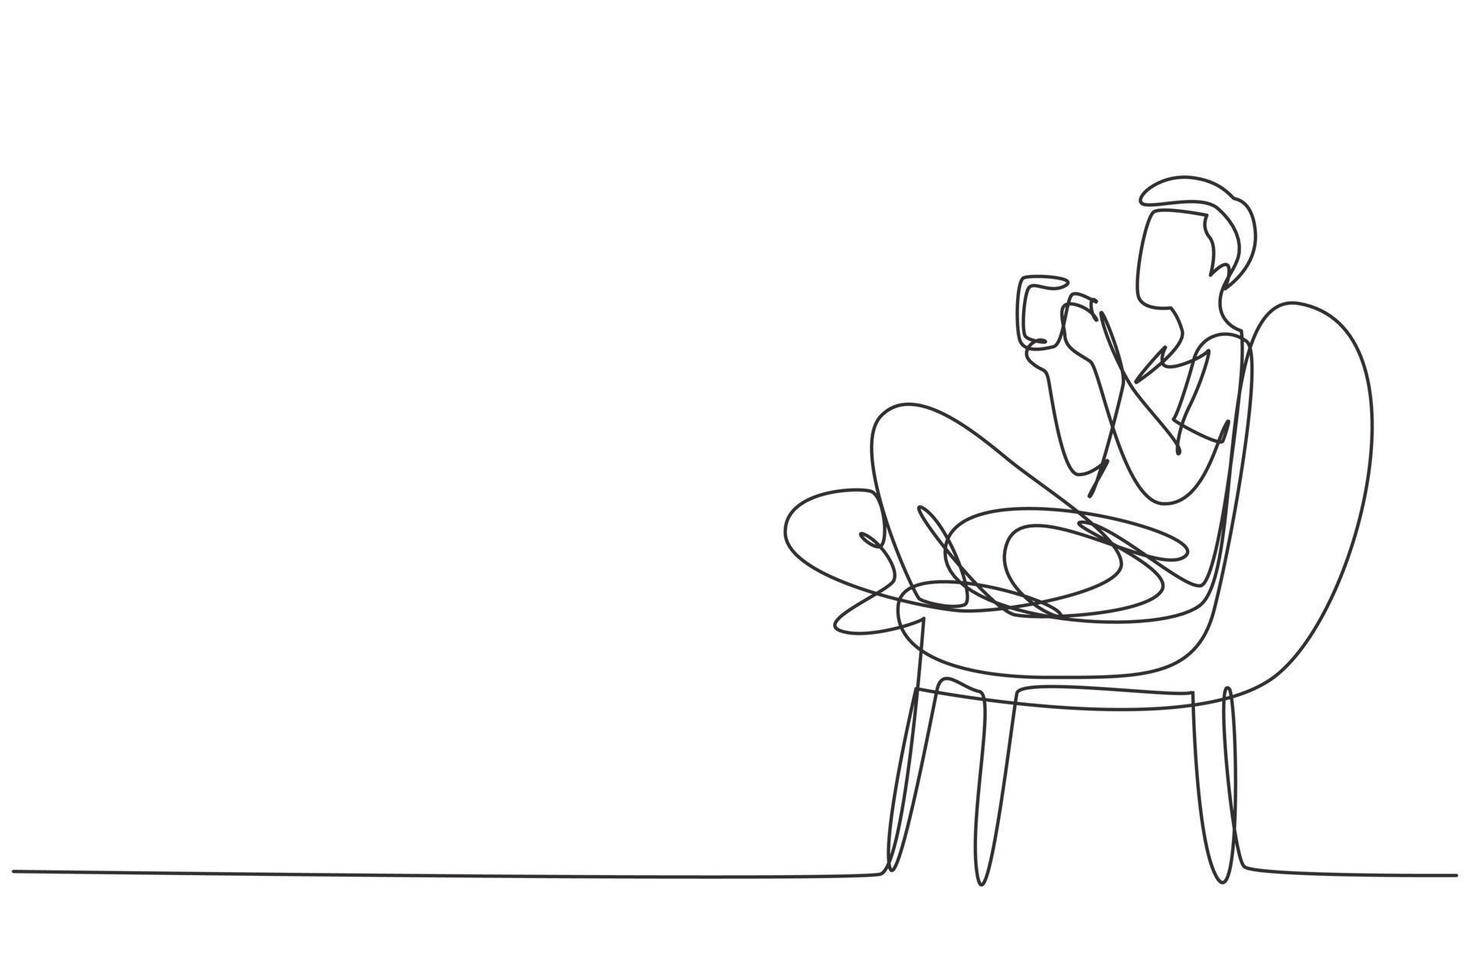 hora do chá de desenho de linha única contínua. rapaz bonito relaxado sentado em uma cadeira moderna, desfrutando de um café quente em frente à janela, vista lateral, espaço livre. ilustração em vetor desenho gráfico de uma linha